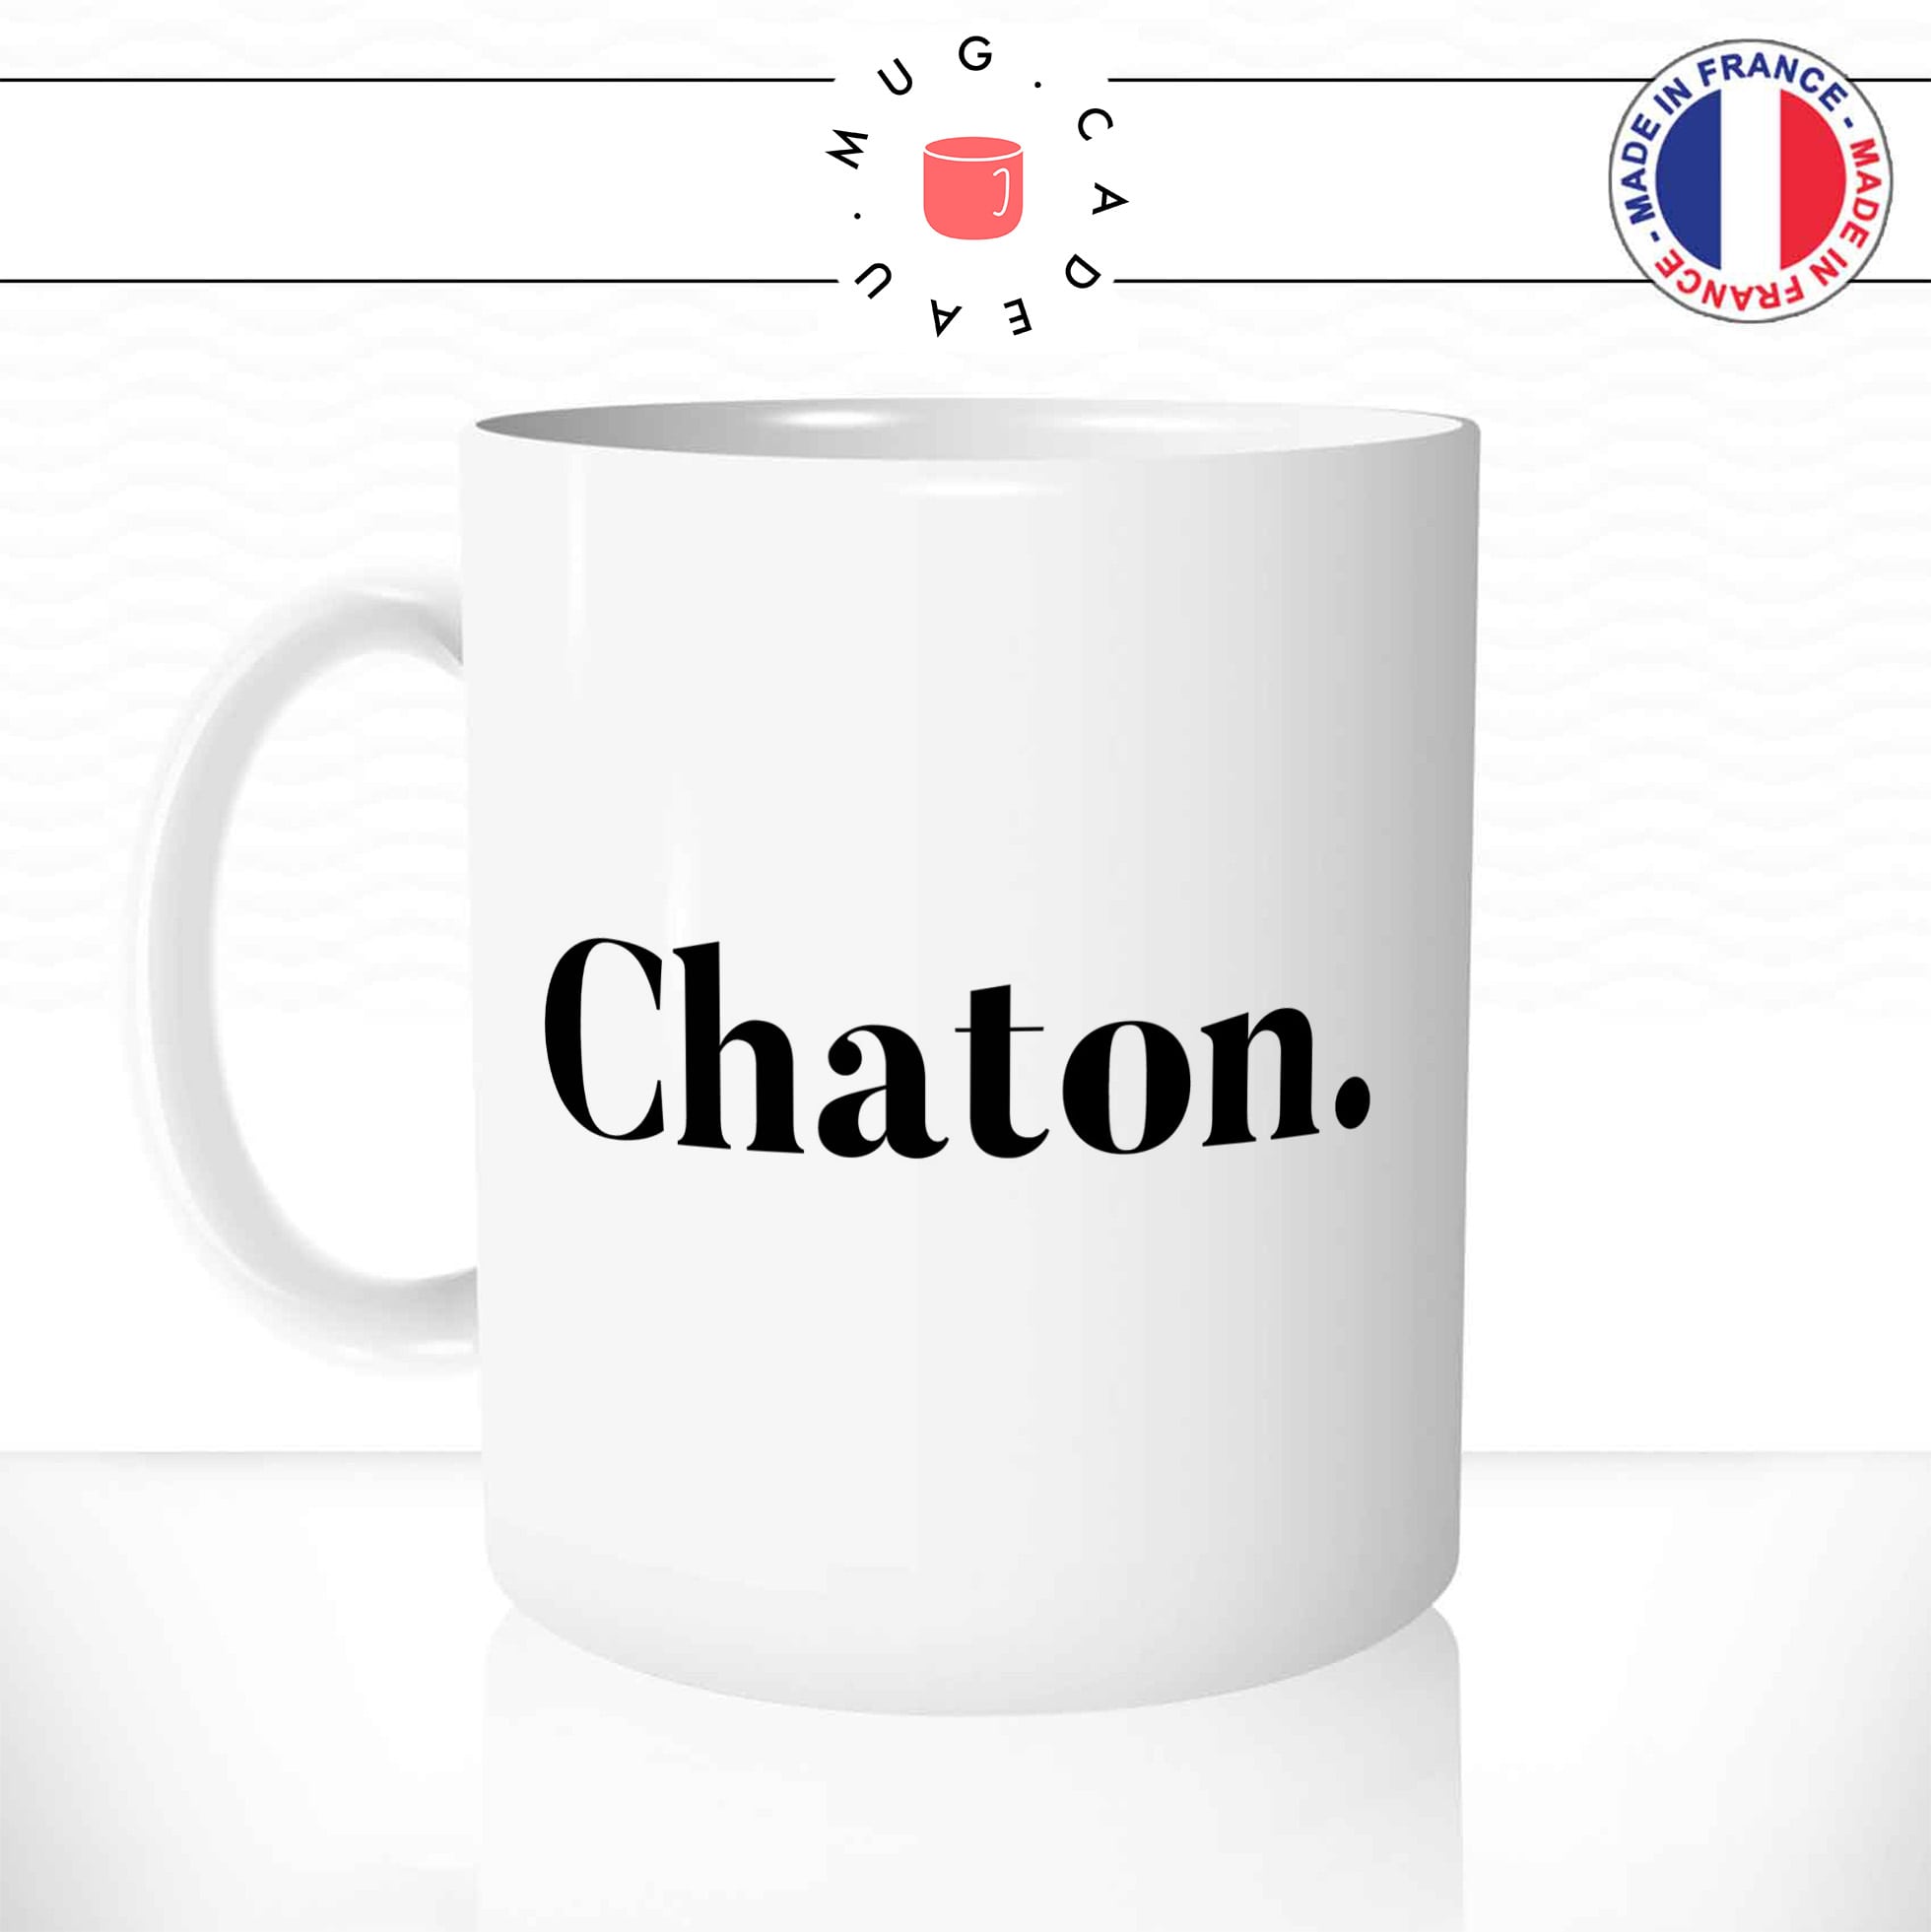 Mug Chaton.